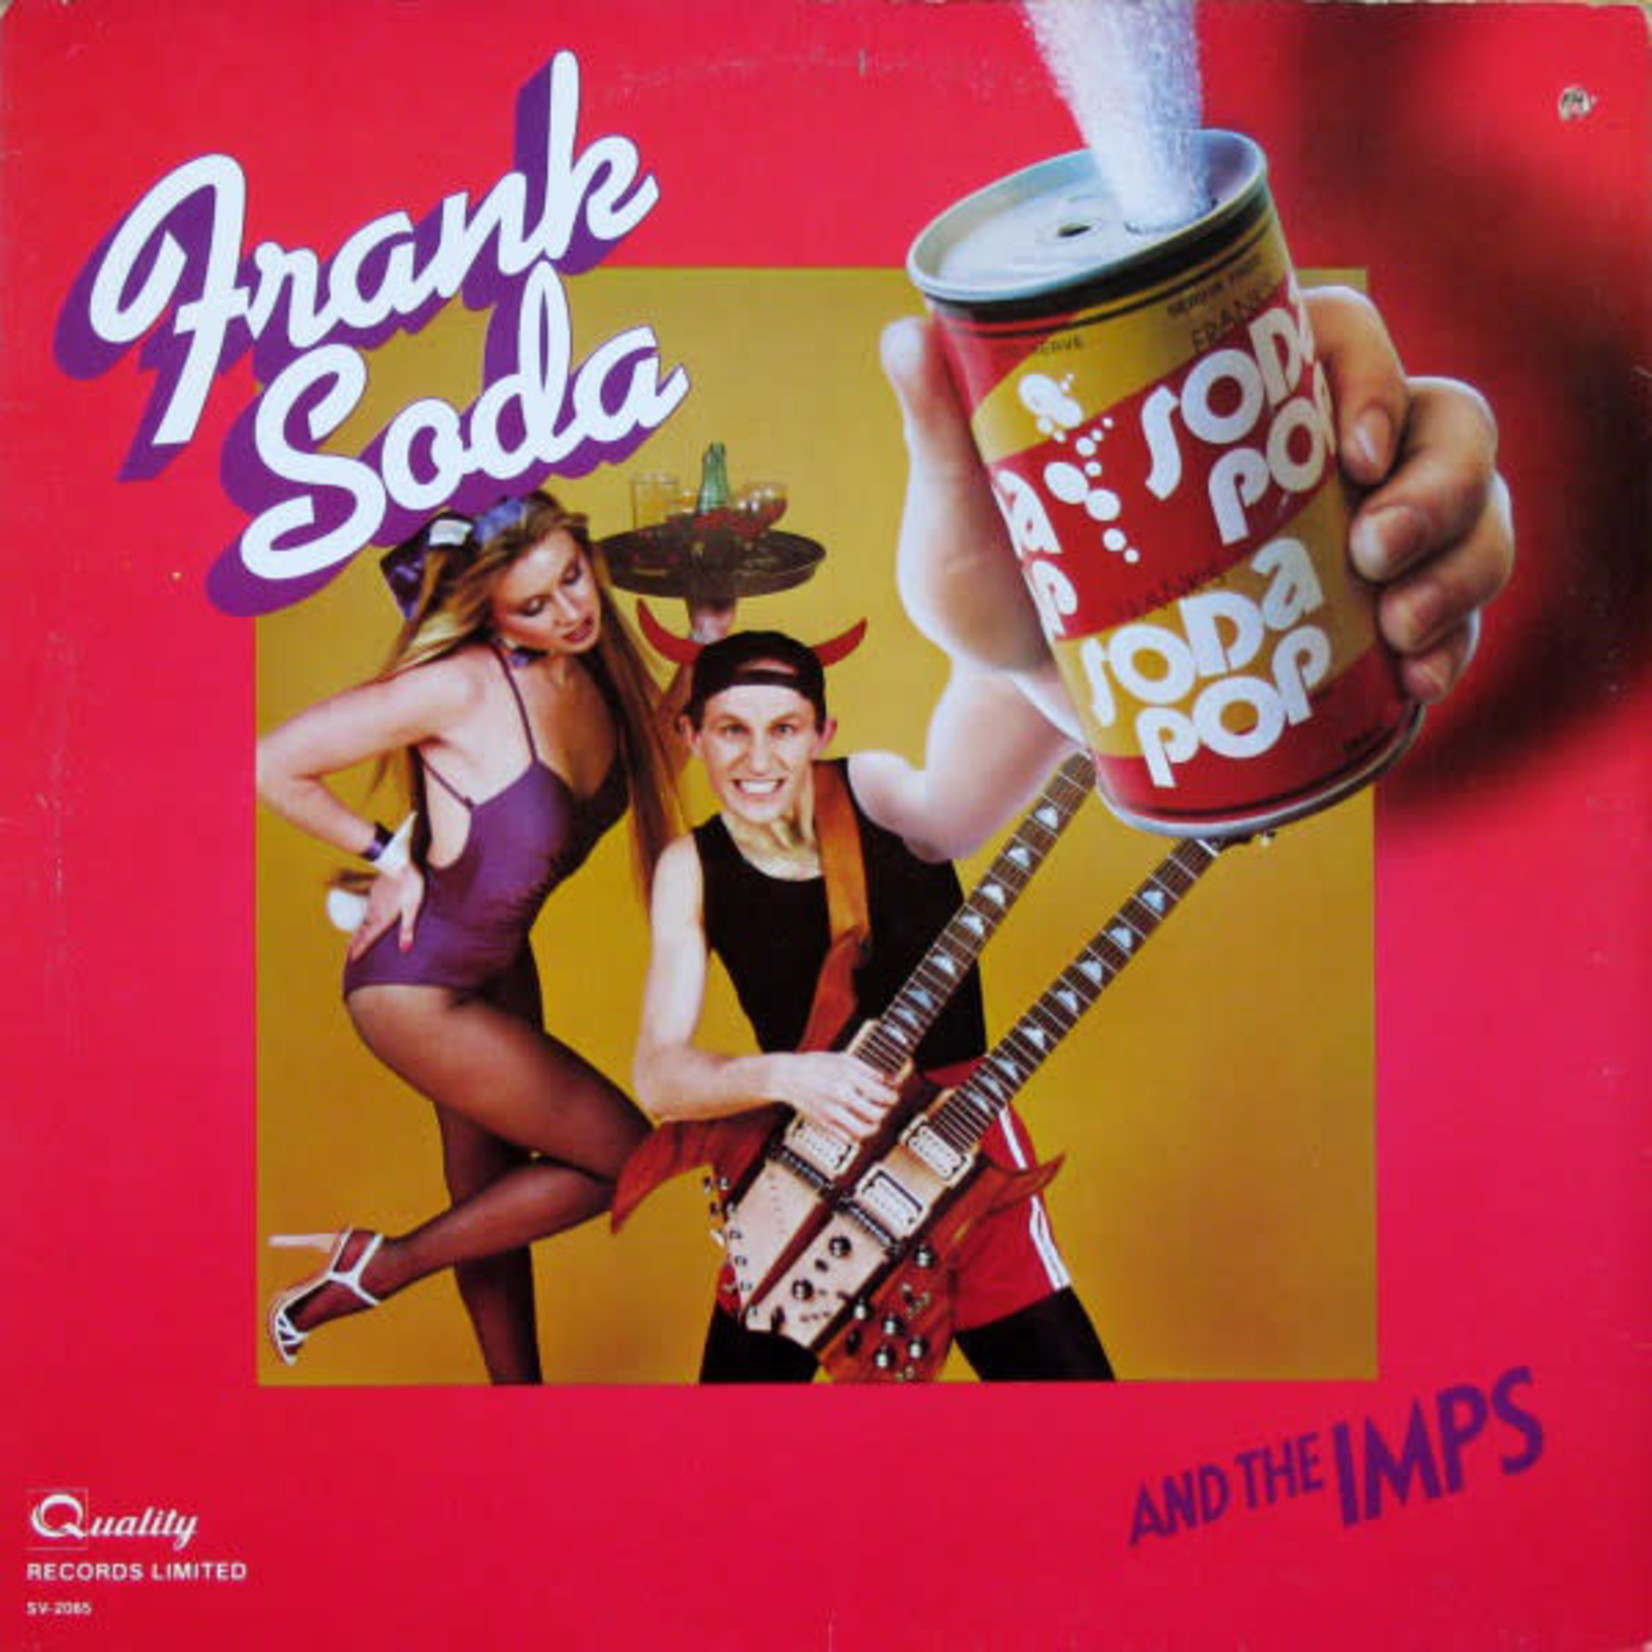 Frank Soda Frank Soda And The Imps* – Frank Soda And The Imps (LP, SV-2065, VG)